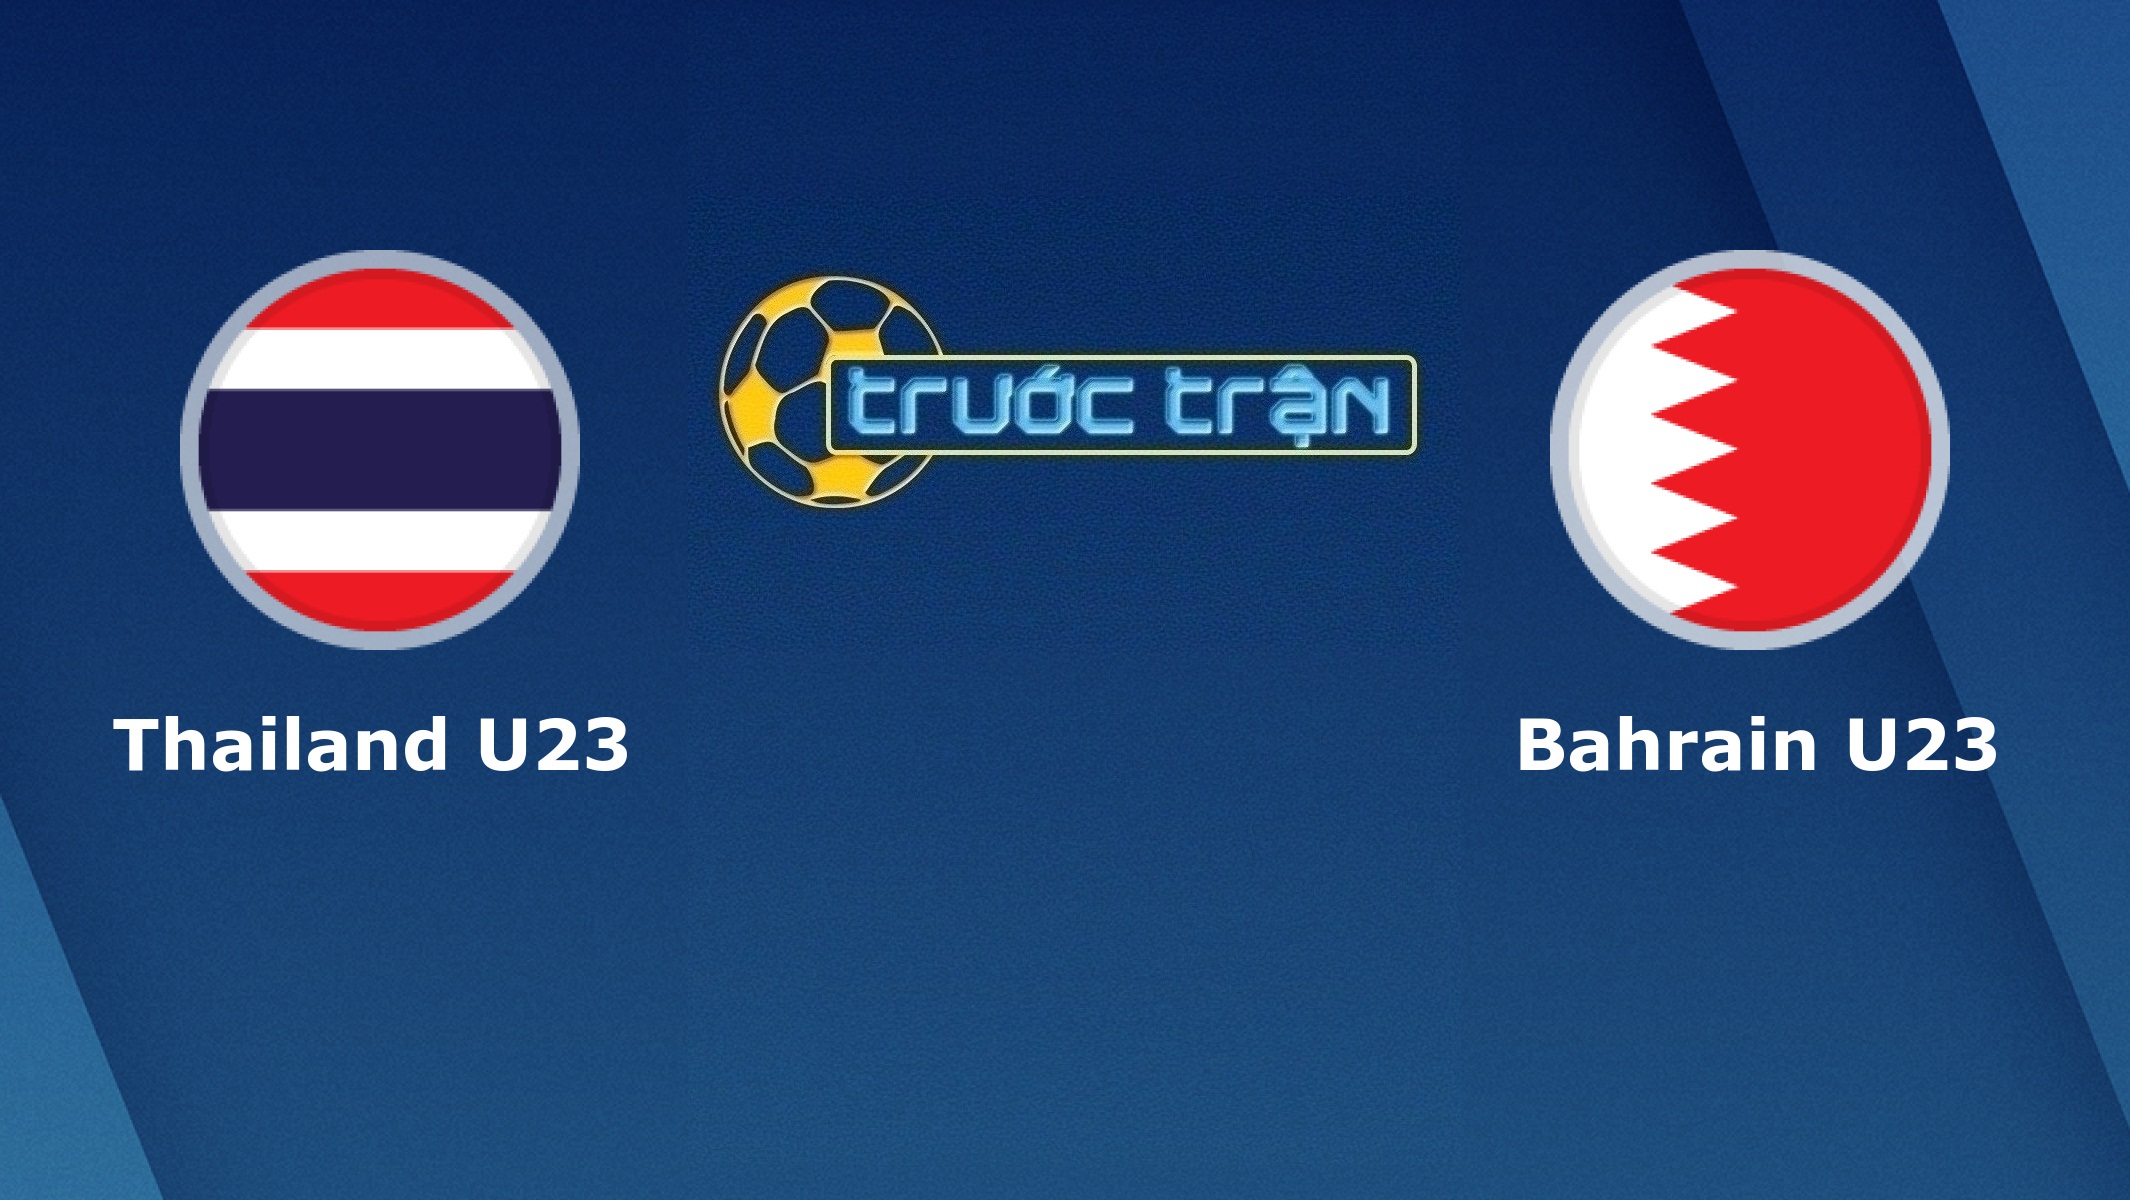 Thái Lan U23 vs Bahrain U23 – Tip kèo bóng đá hôm nay – 08/01